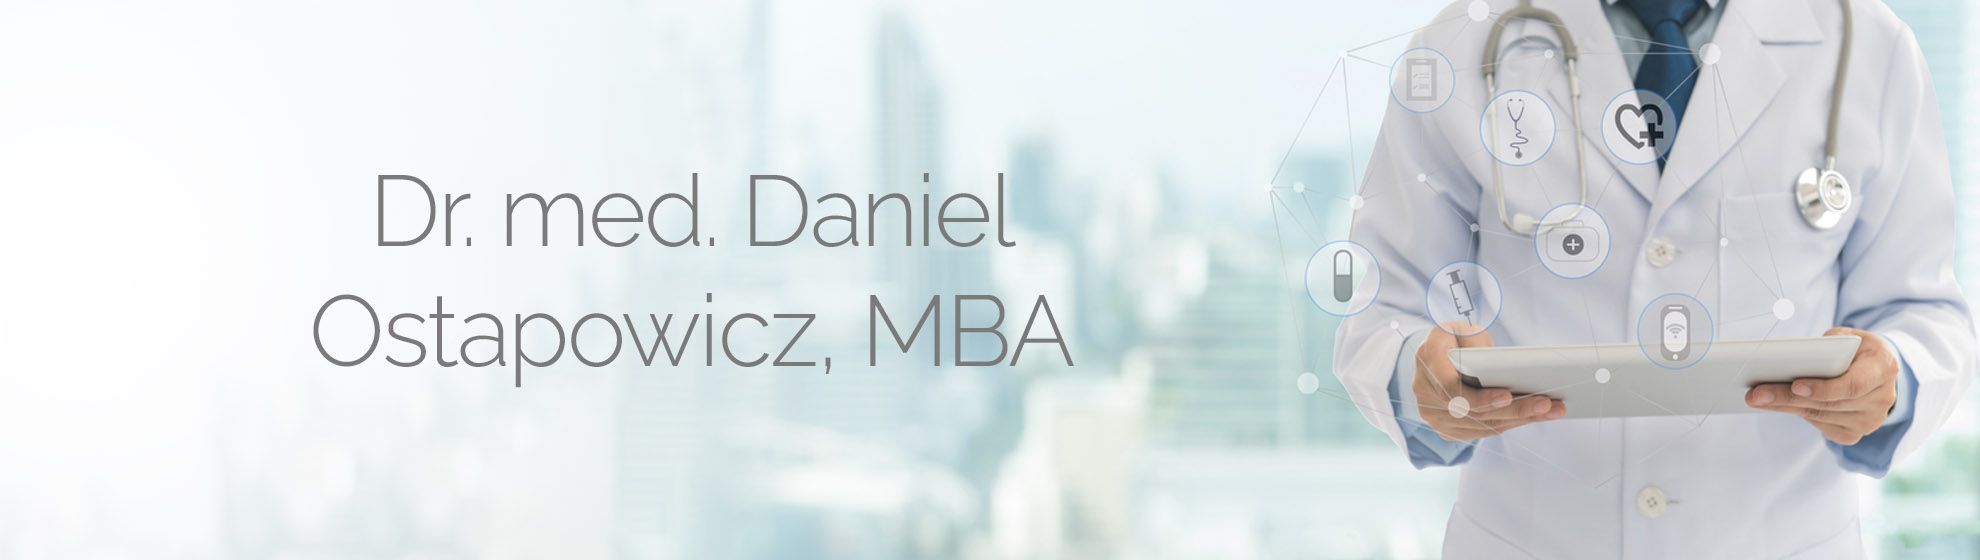 Dr. med. Daniel Ostapowicz, MBA